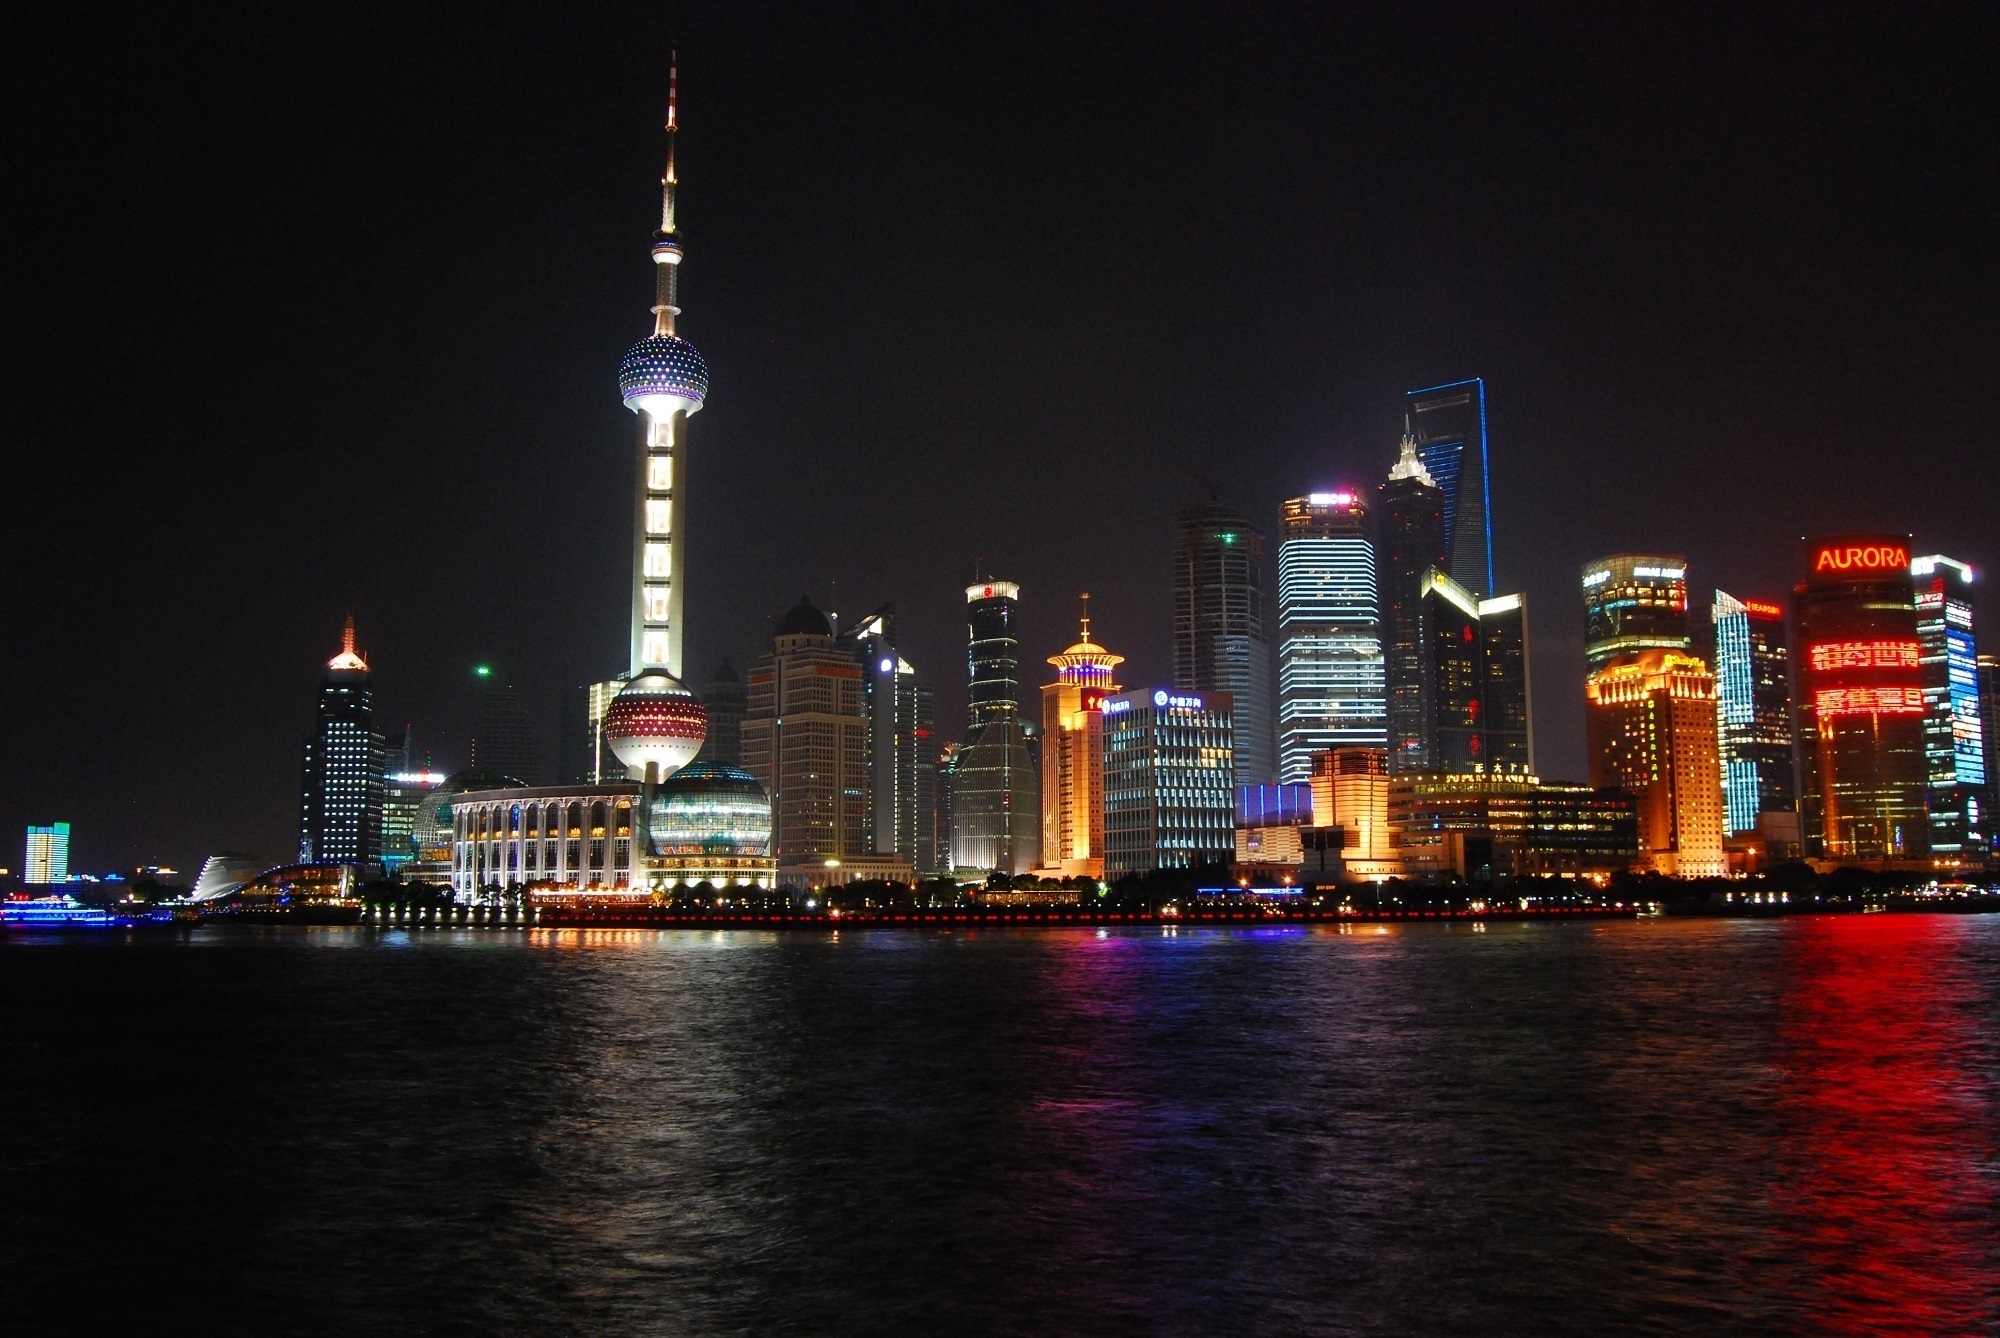 Shanghai skyline photo